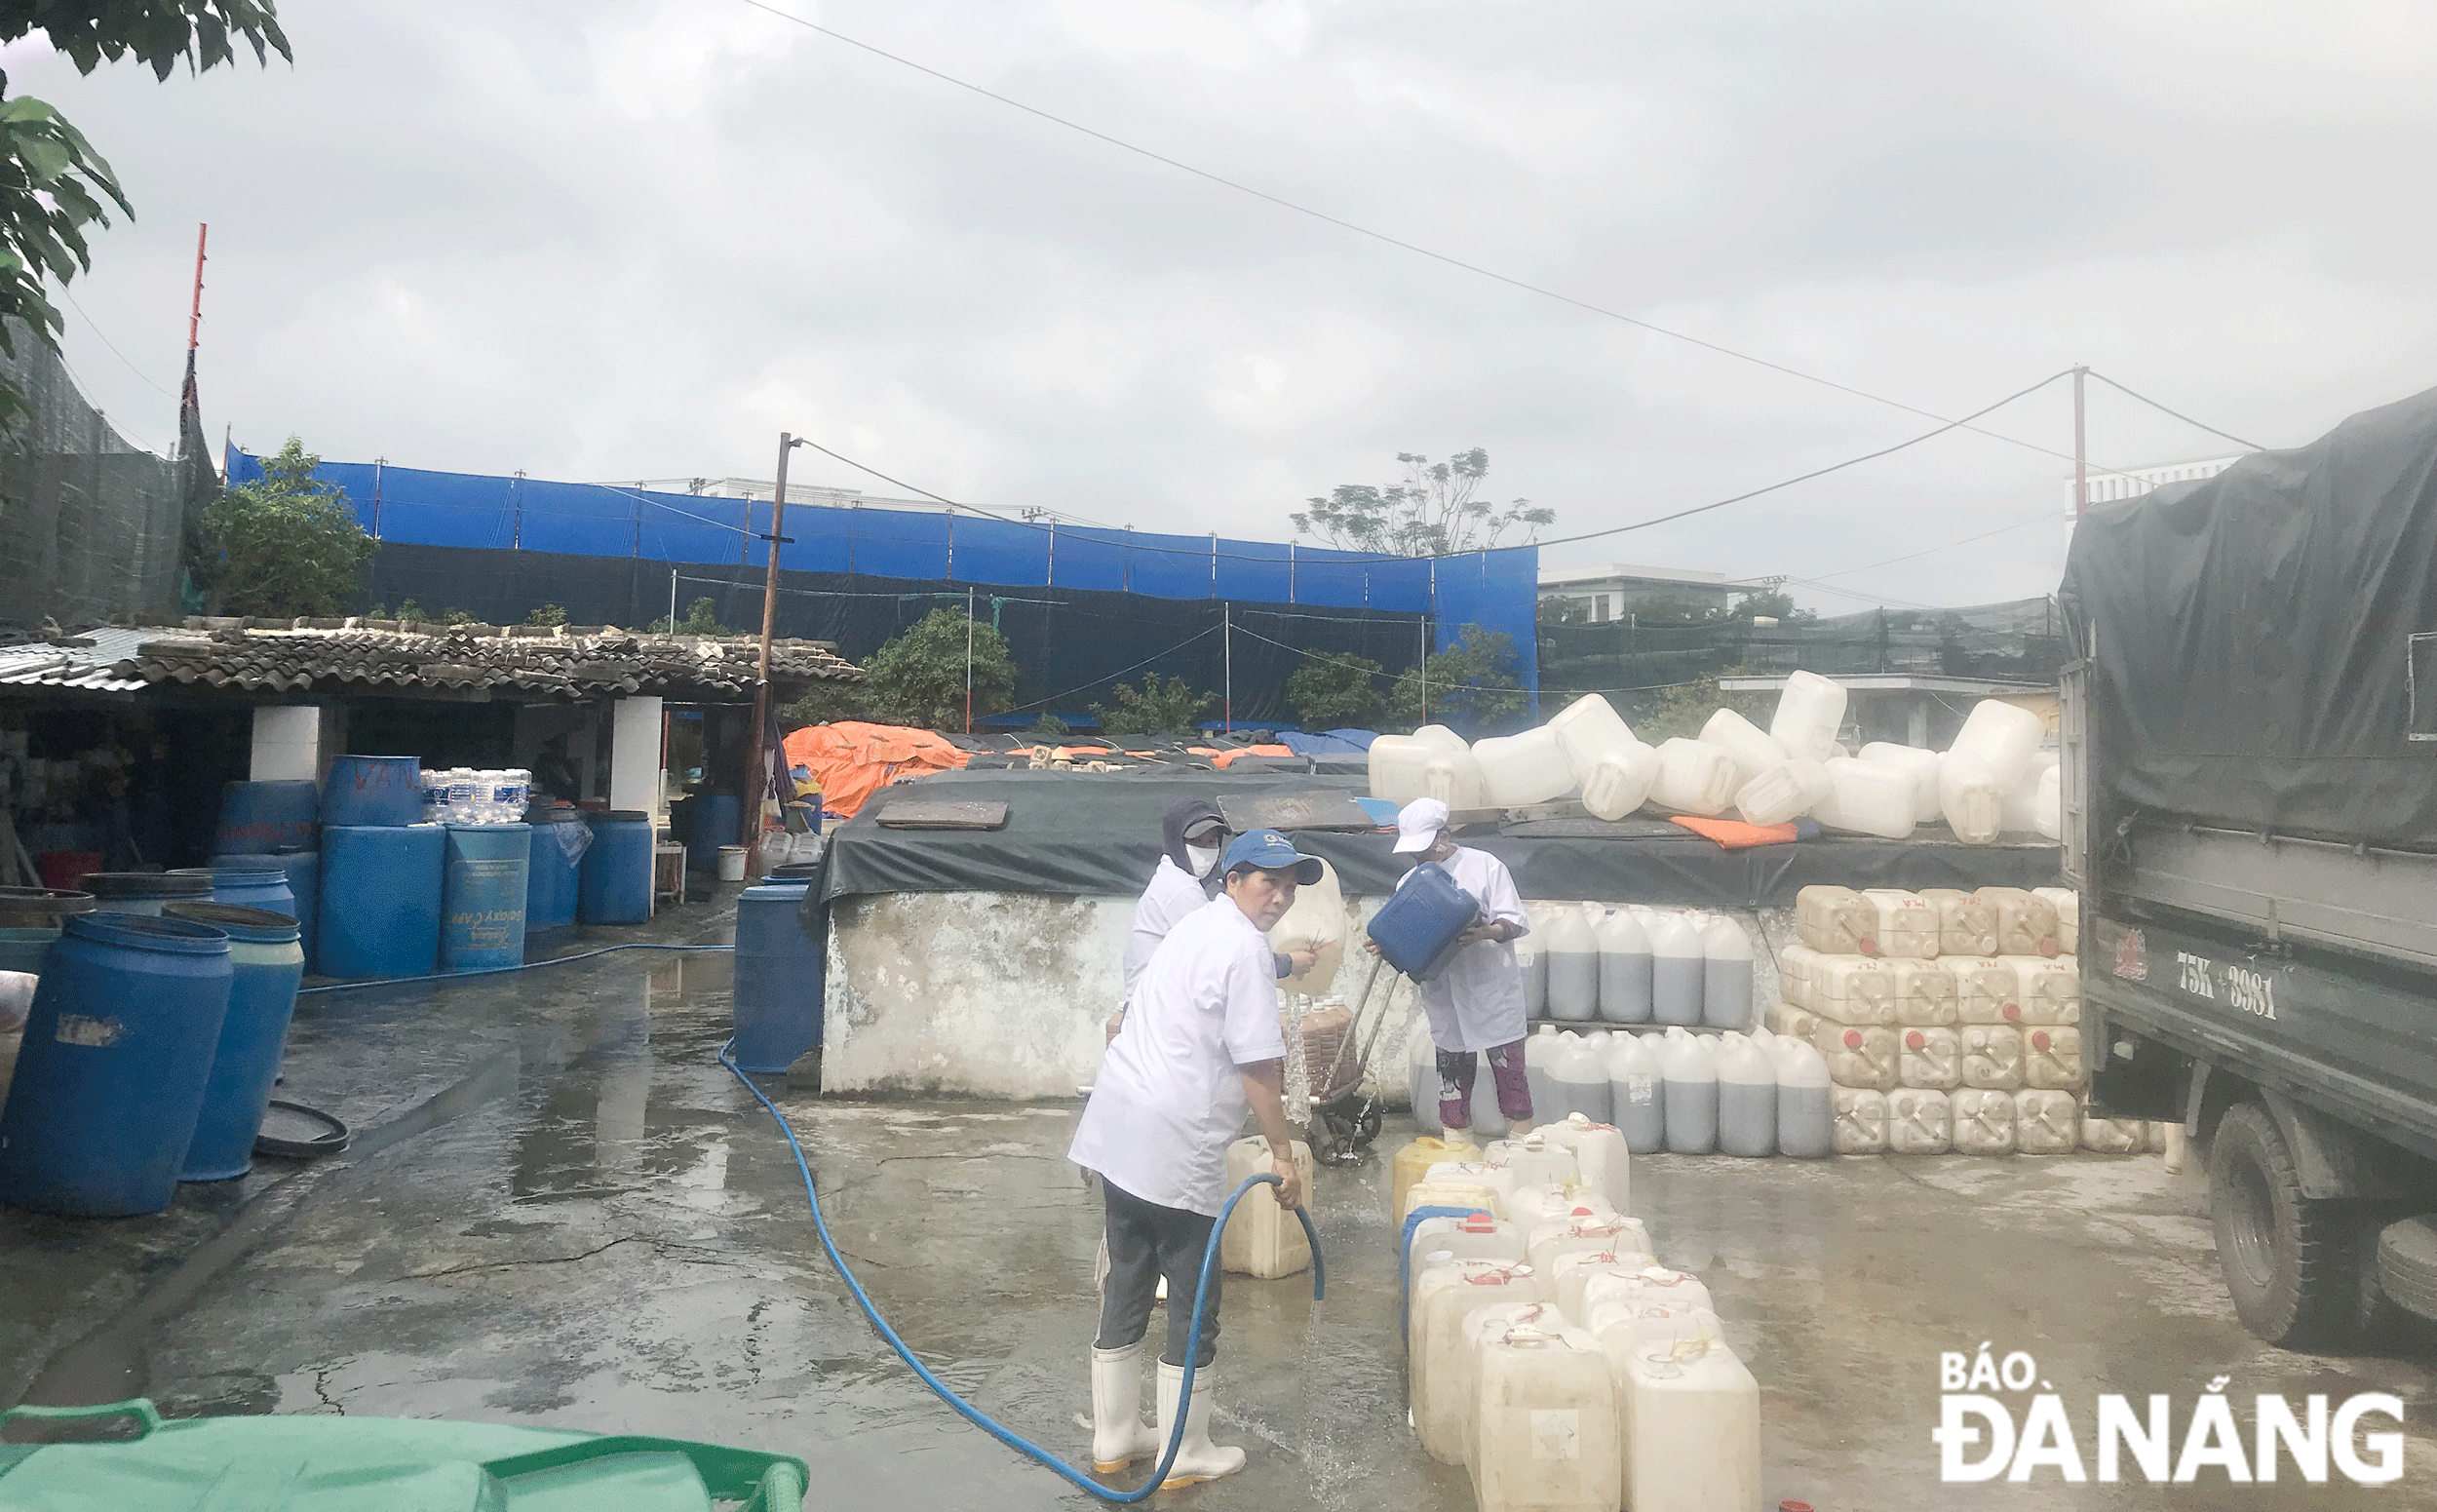 Cơ sở sản xuất nước mắm Văn Tranh tại đường Chính Hữu (phường An Hải Bắc) phát tán mùi hôi trong khu dân cư. Ảnh: KHÁNH HUYỀN